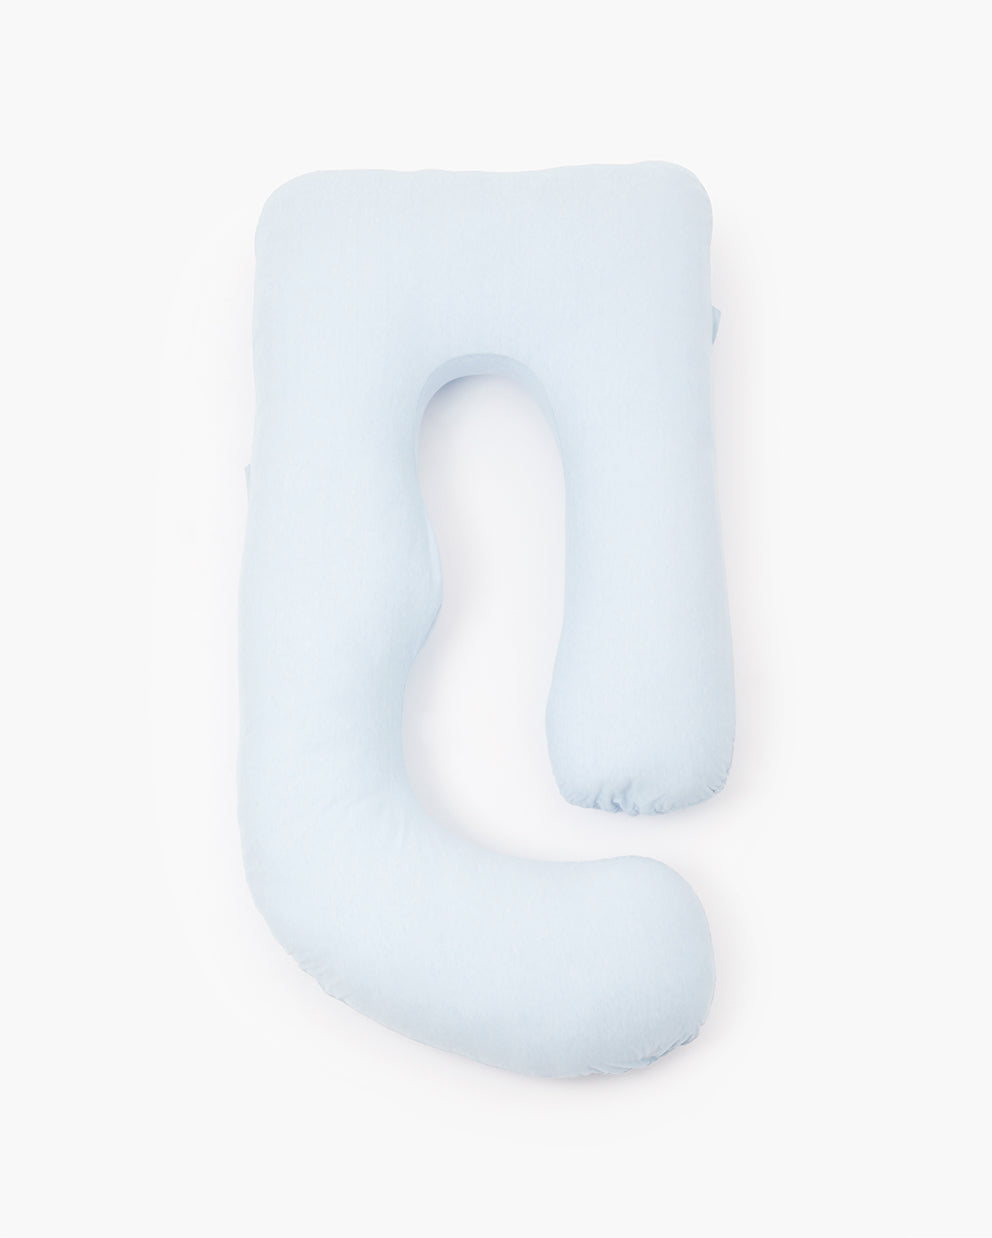 HUGGABLE - Notre oreiller corporel de coton de maternité